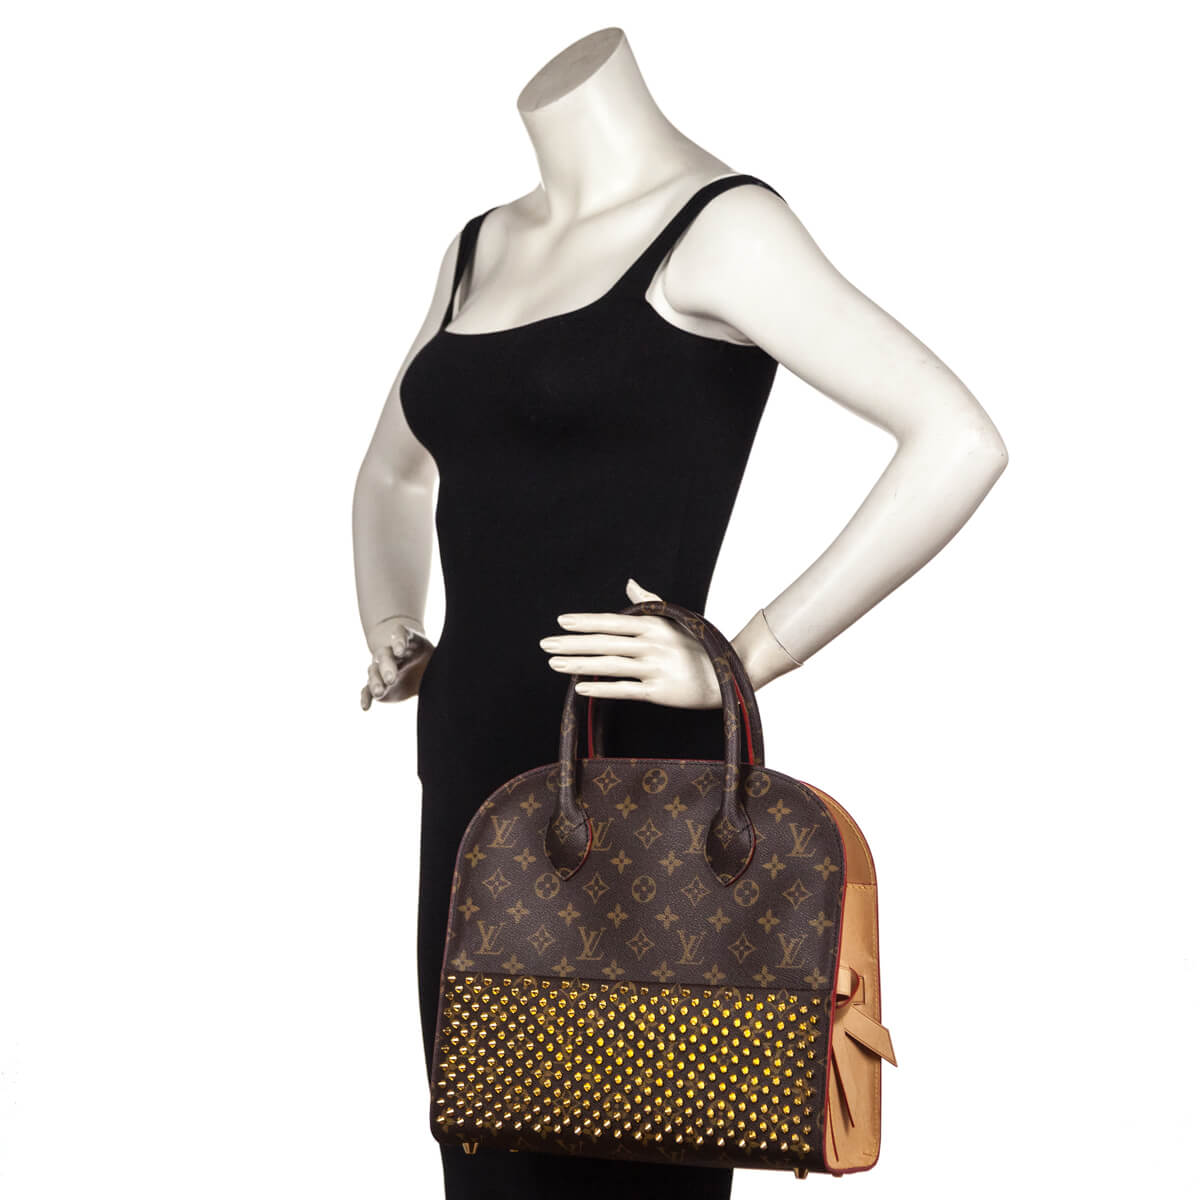 Louis Vuitton x Christian Louboutin Shopping bag – Iconics